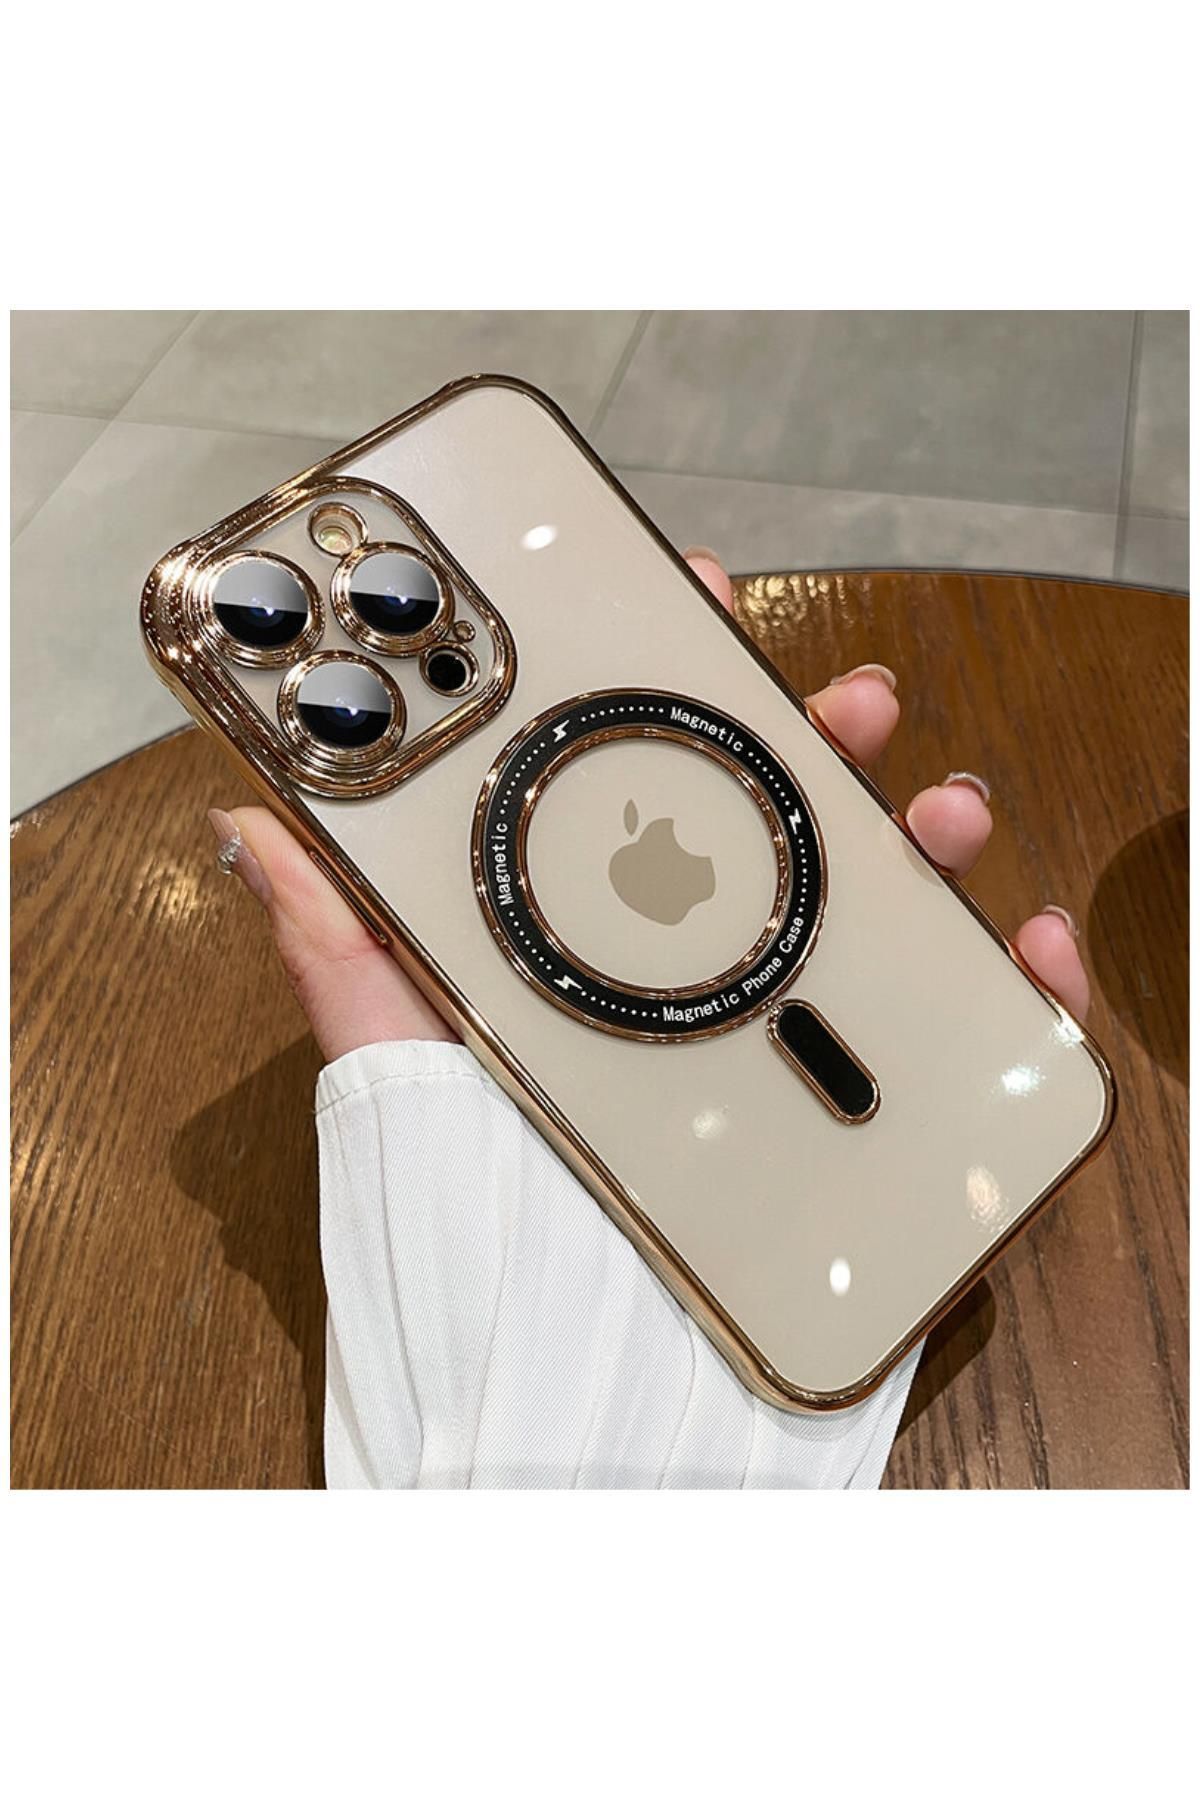 Zebana Apple Iphone 12 Pro Max Uyumlu Kılıf Manyetik Kablosuz Şarj Destekli Mona Silikon Kılıf Gold